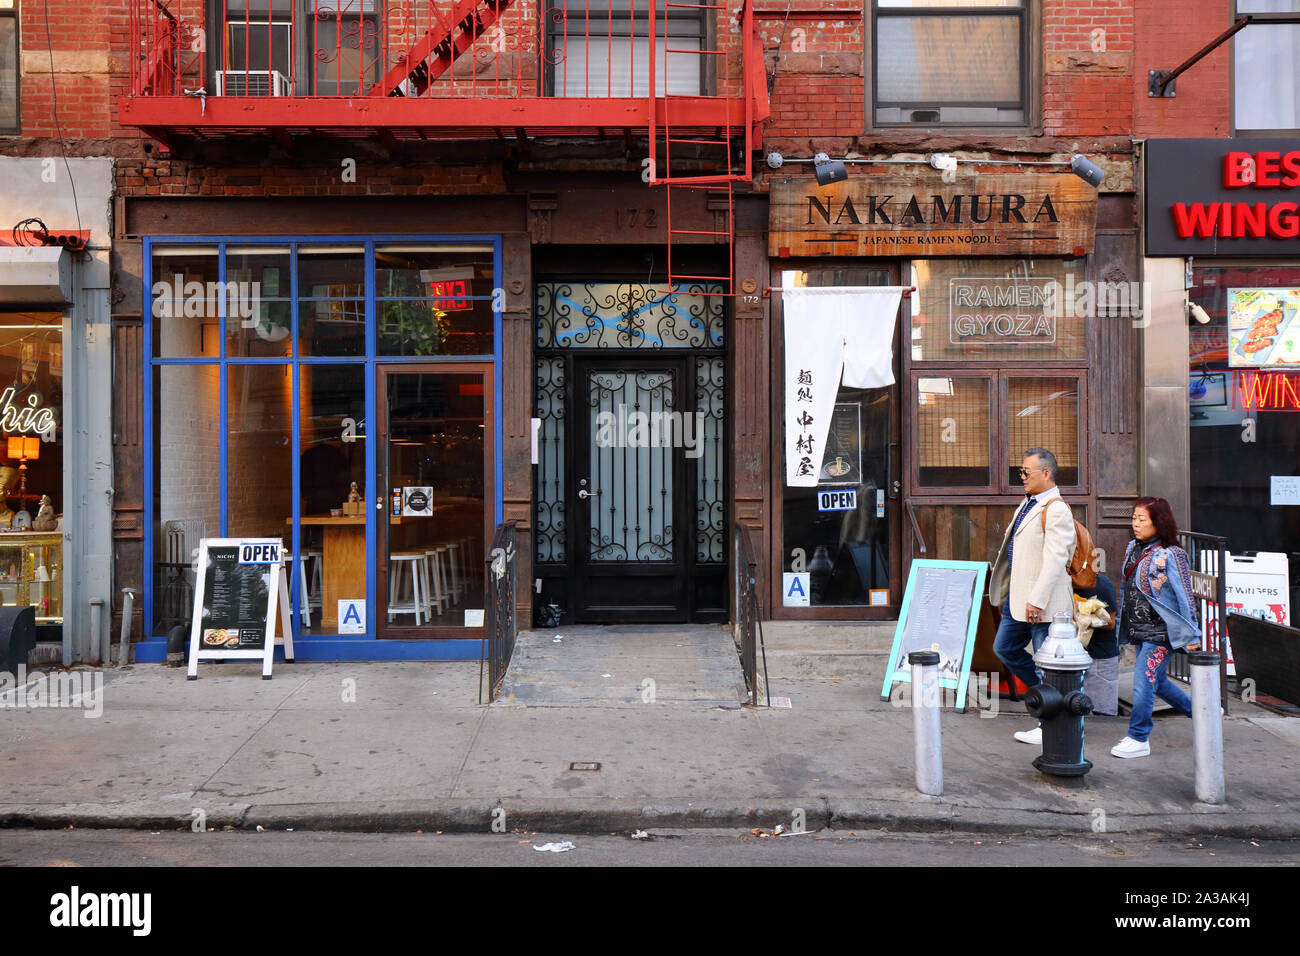 Niche, Nakamura, 172 Delancey Street, New York, NY. devanture extérieure de restaurants dans le lower east side de Manhattan. Banque D'Images